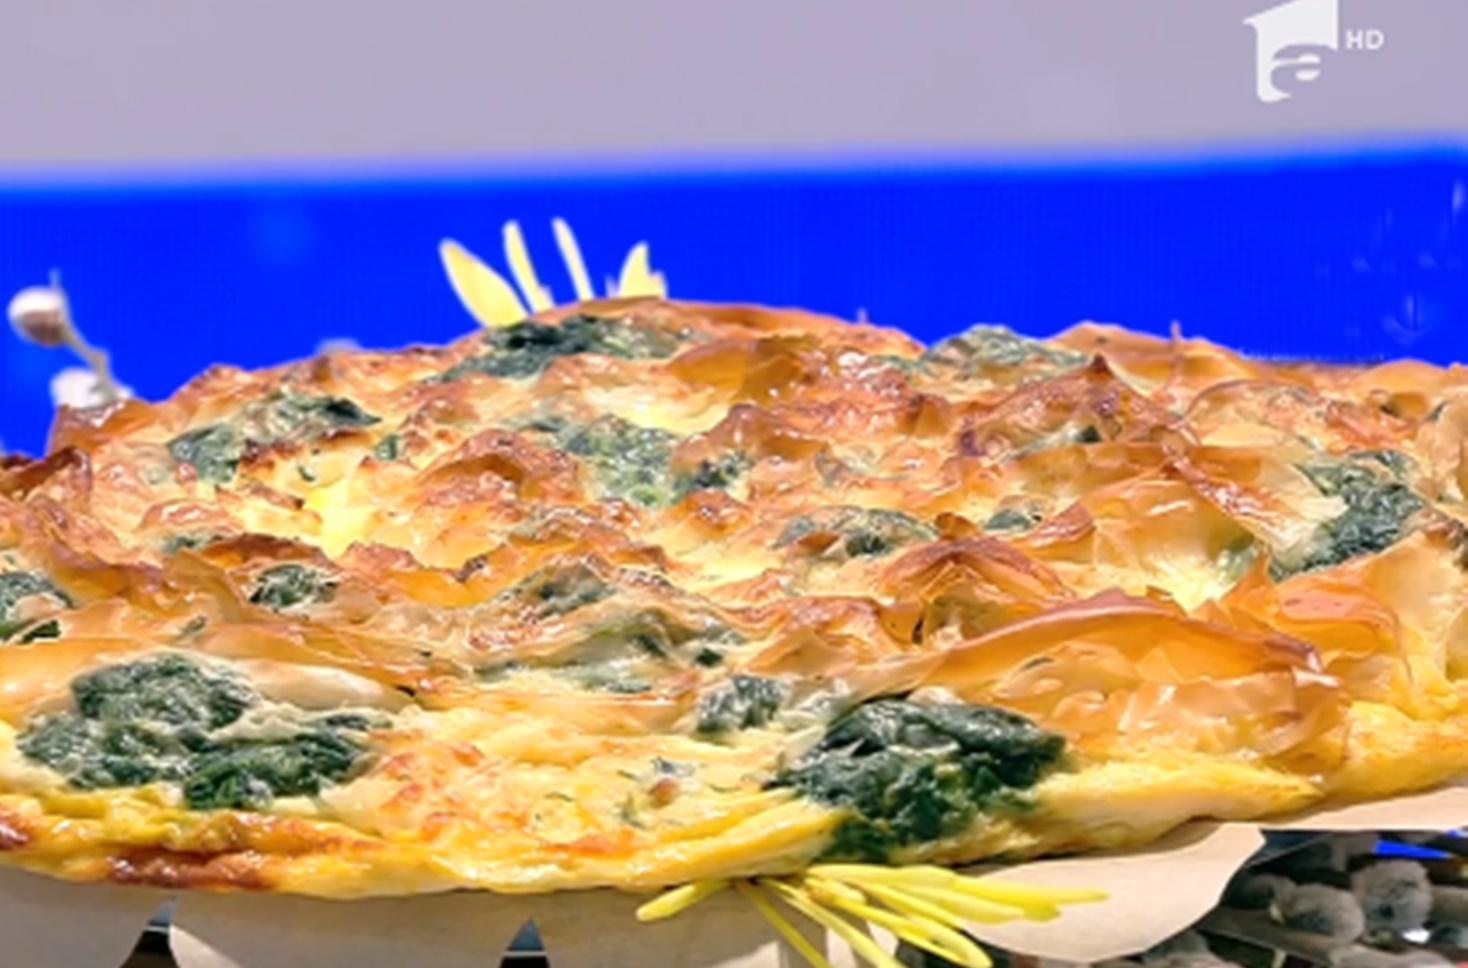 Inspirată din bucătăria grecească, plăcinta cu brânză și spanac este un preparat gustos de primăvara